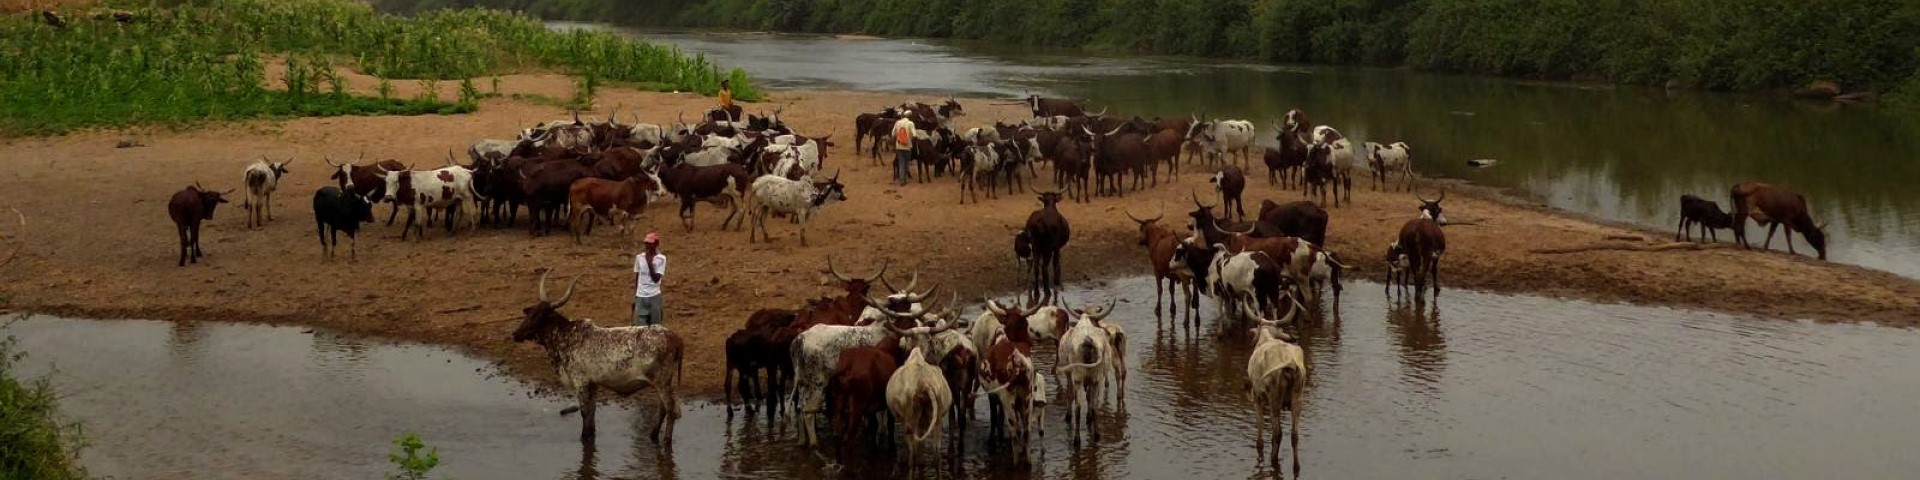 Agriculteur·rice·s avec leurs troupeaux de bovins au bord d’un cours d’eau. Droits d’auteur : GIZ